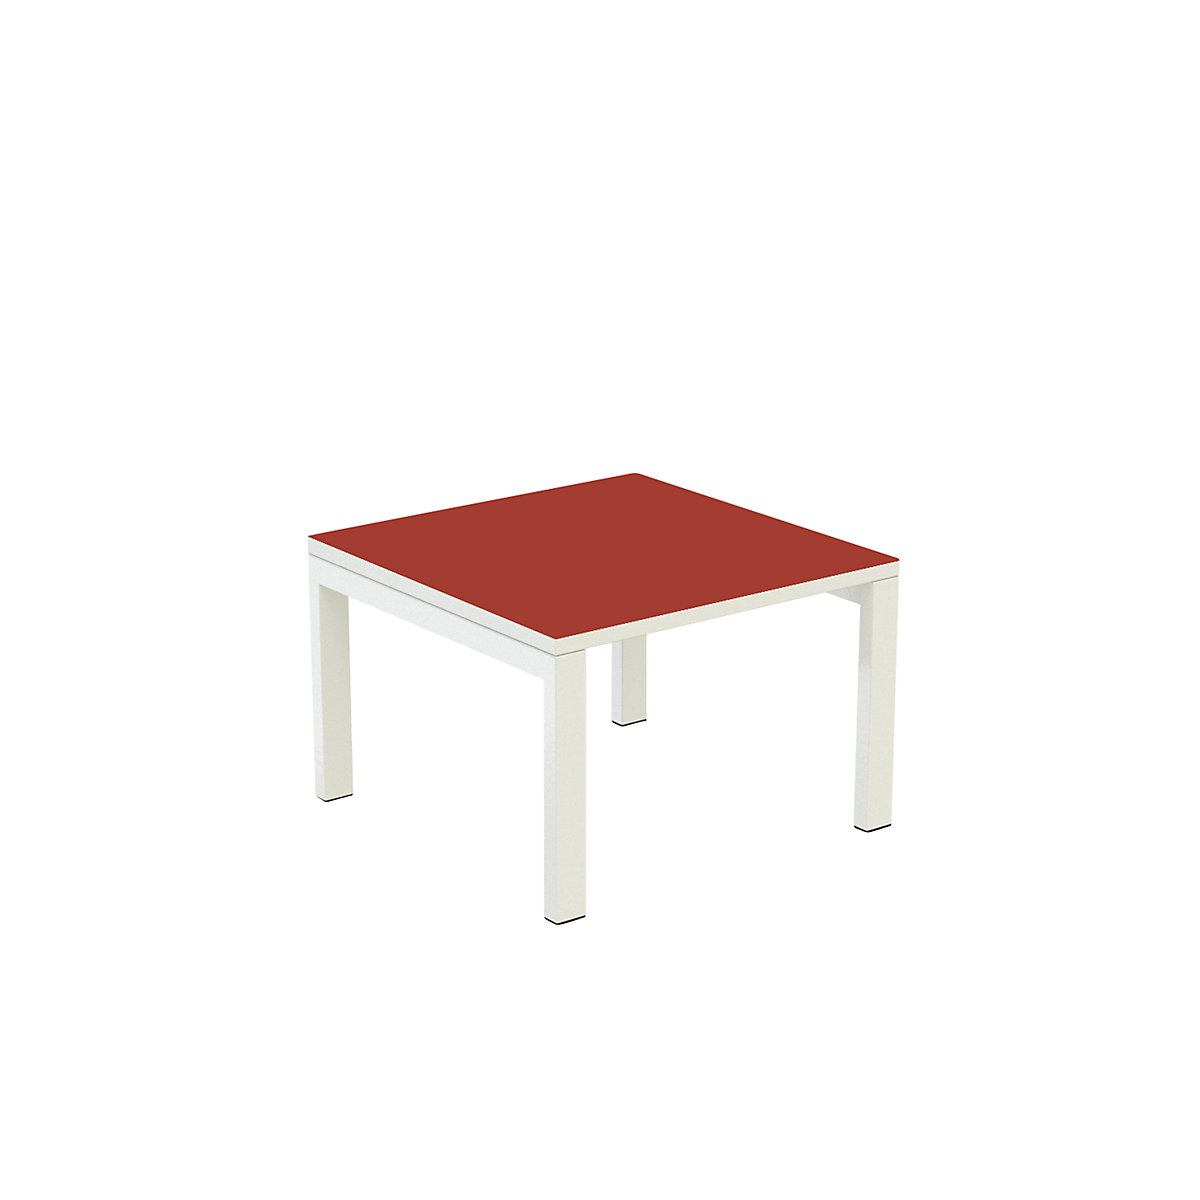 Dodatna miza easyDesk® – Paperflow, VxŠxG 400 x 600 x 600 mm, rdeče barve-7